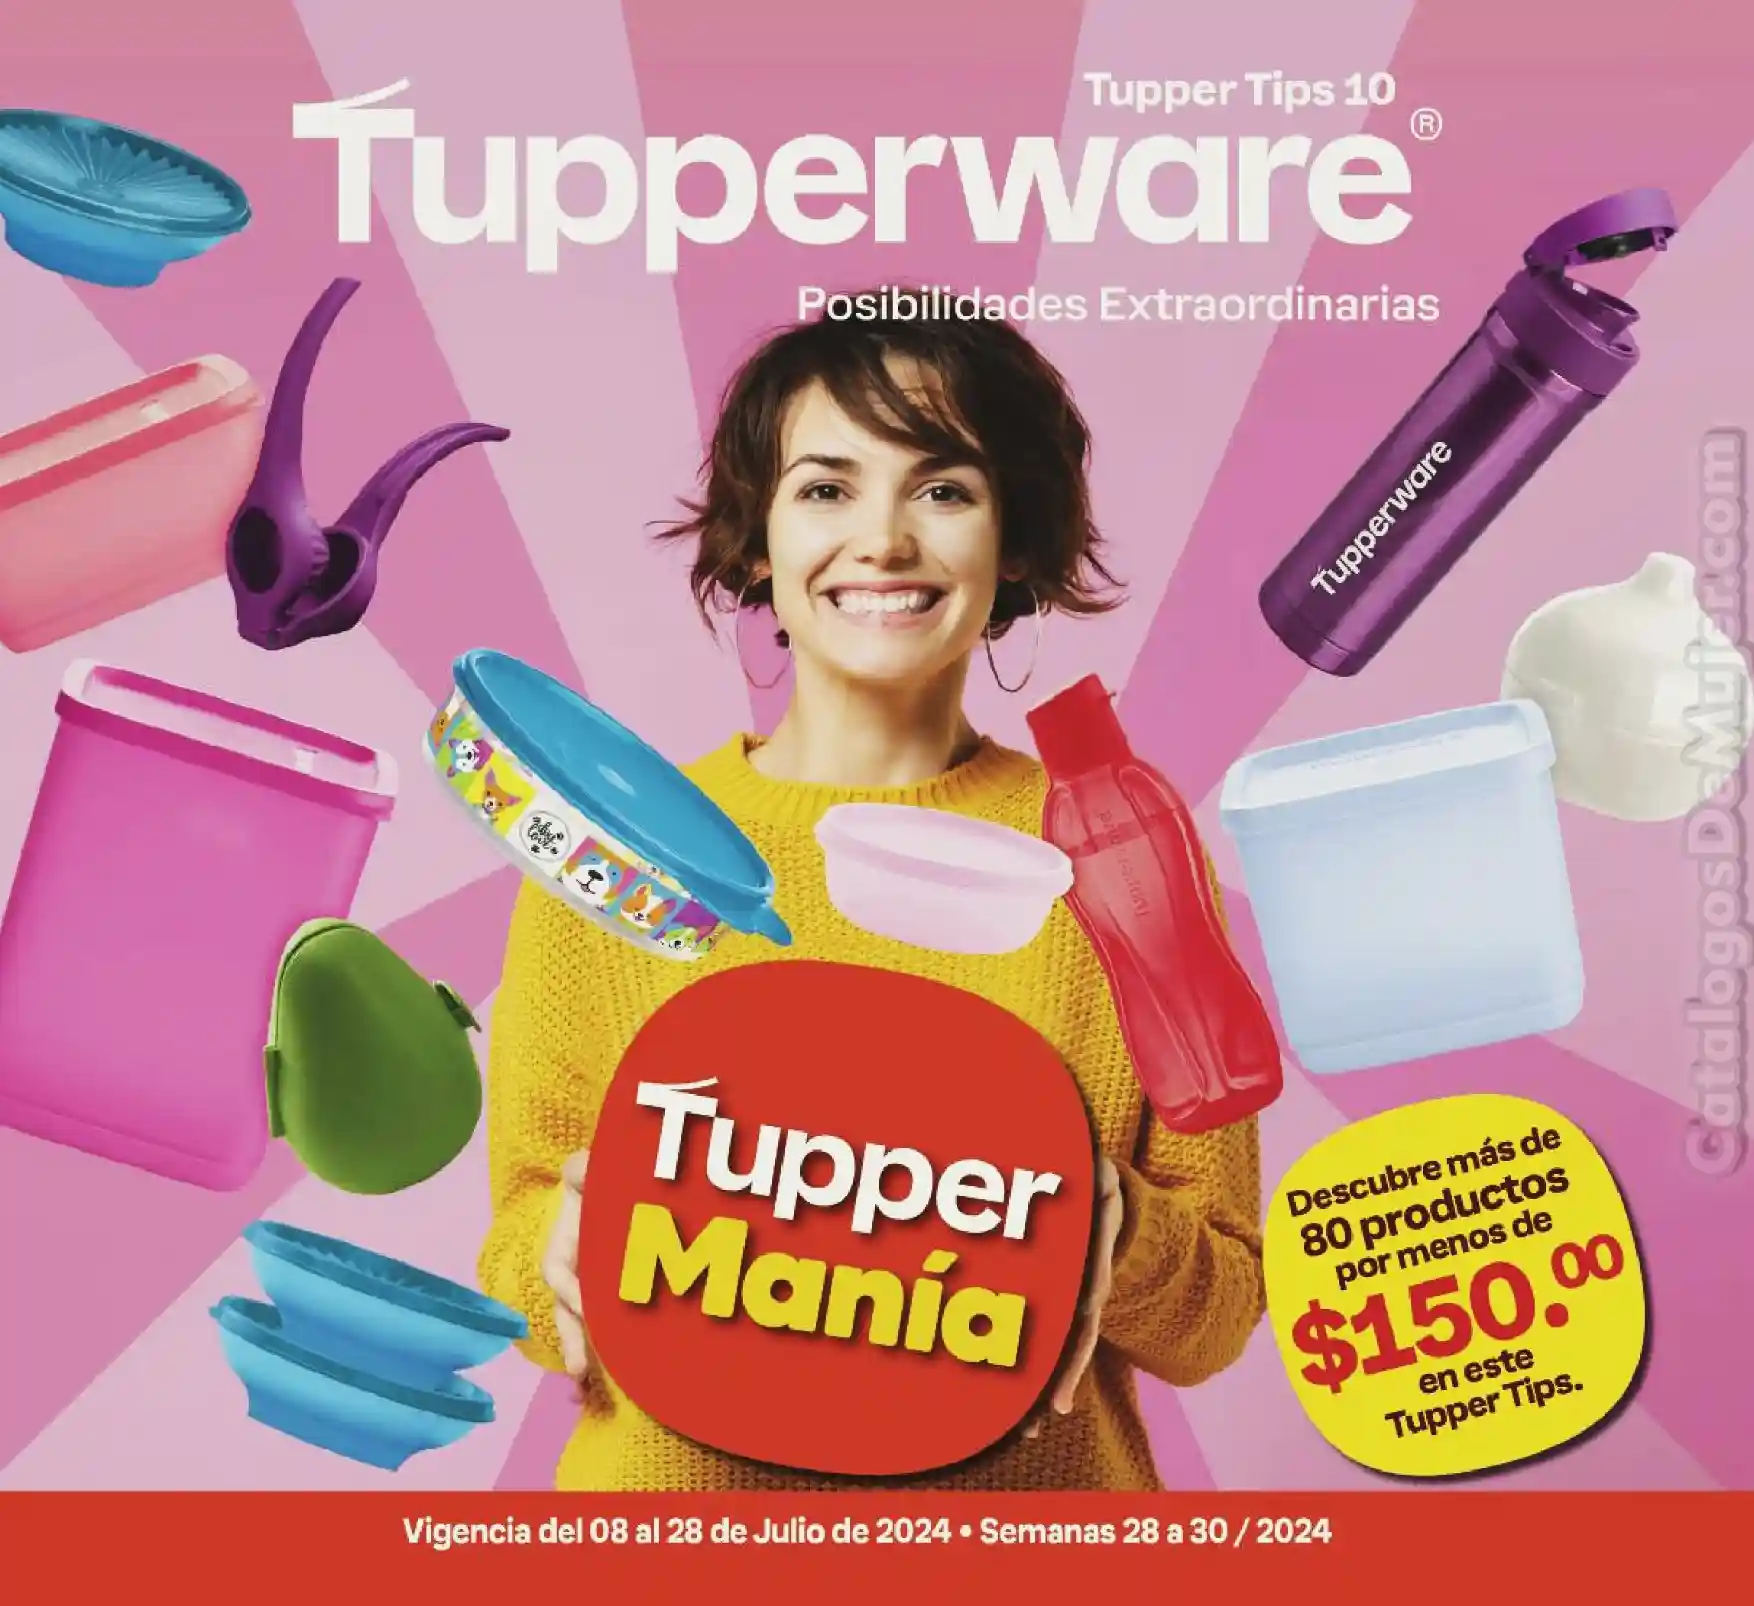 Catálogo Tupperware Tupper Tips 10 2024 México